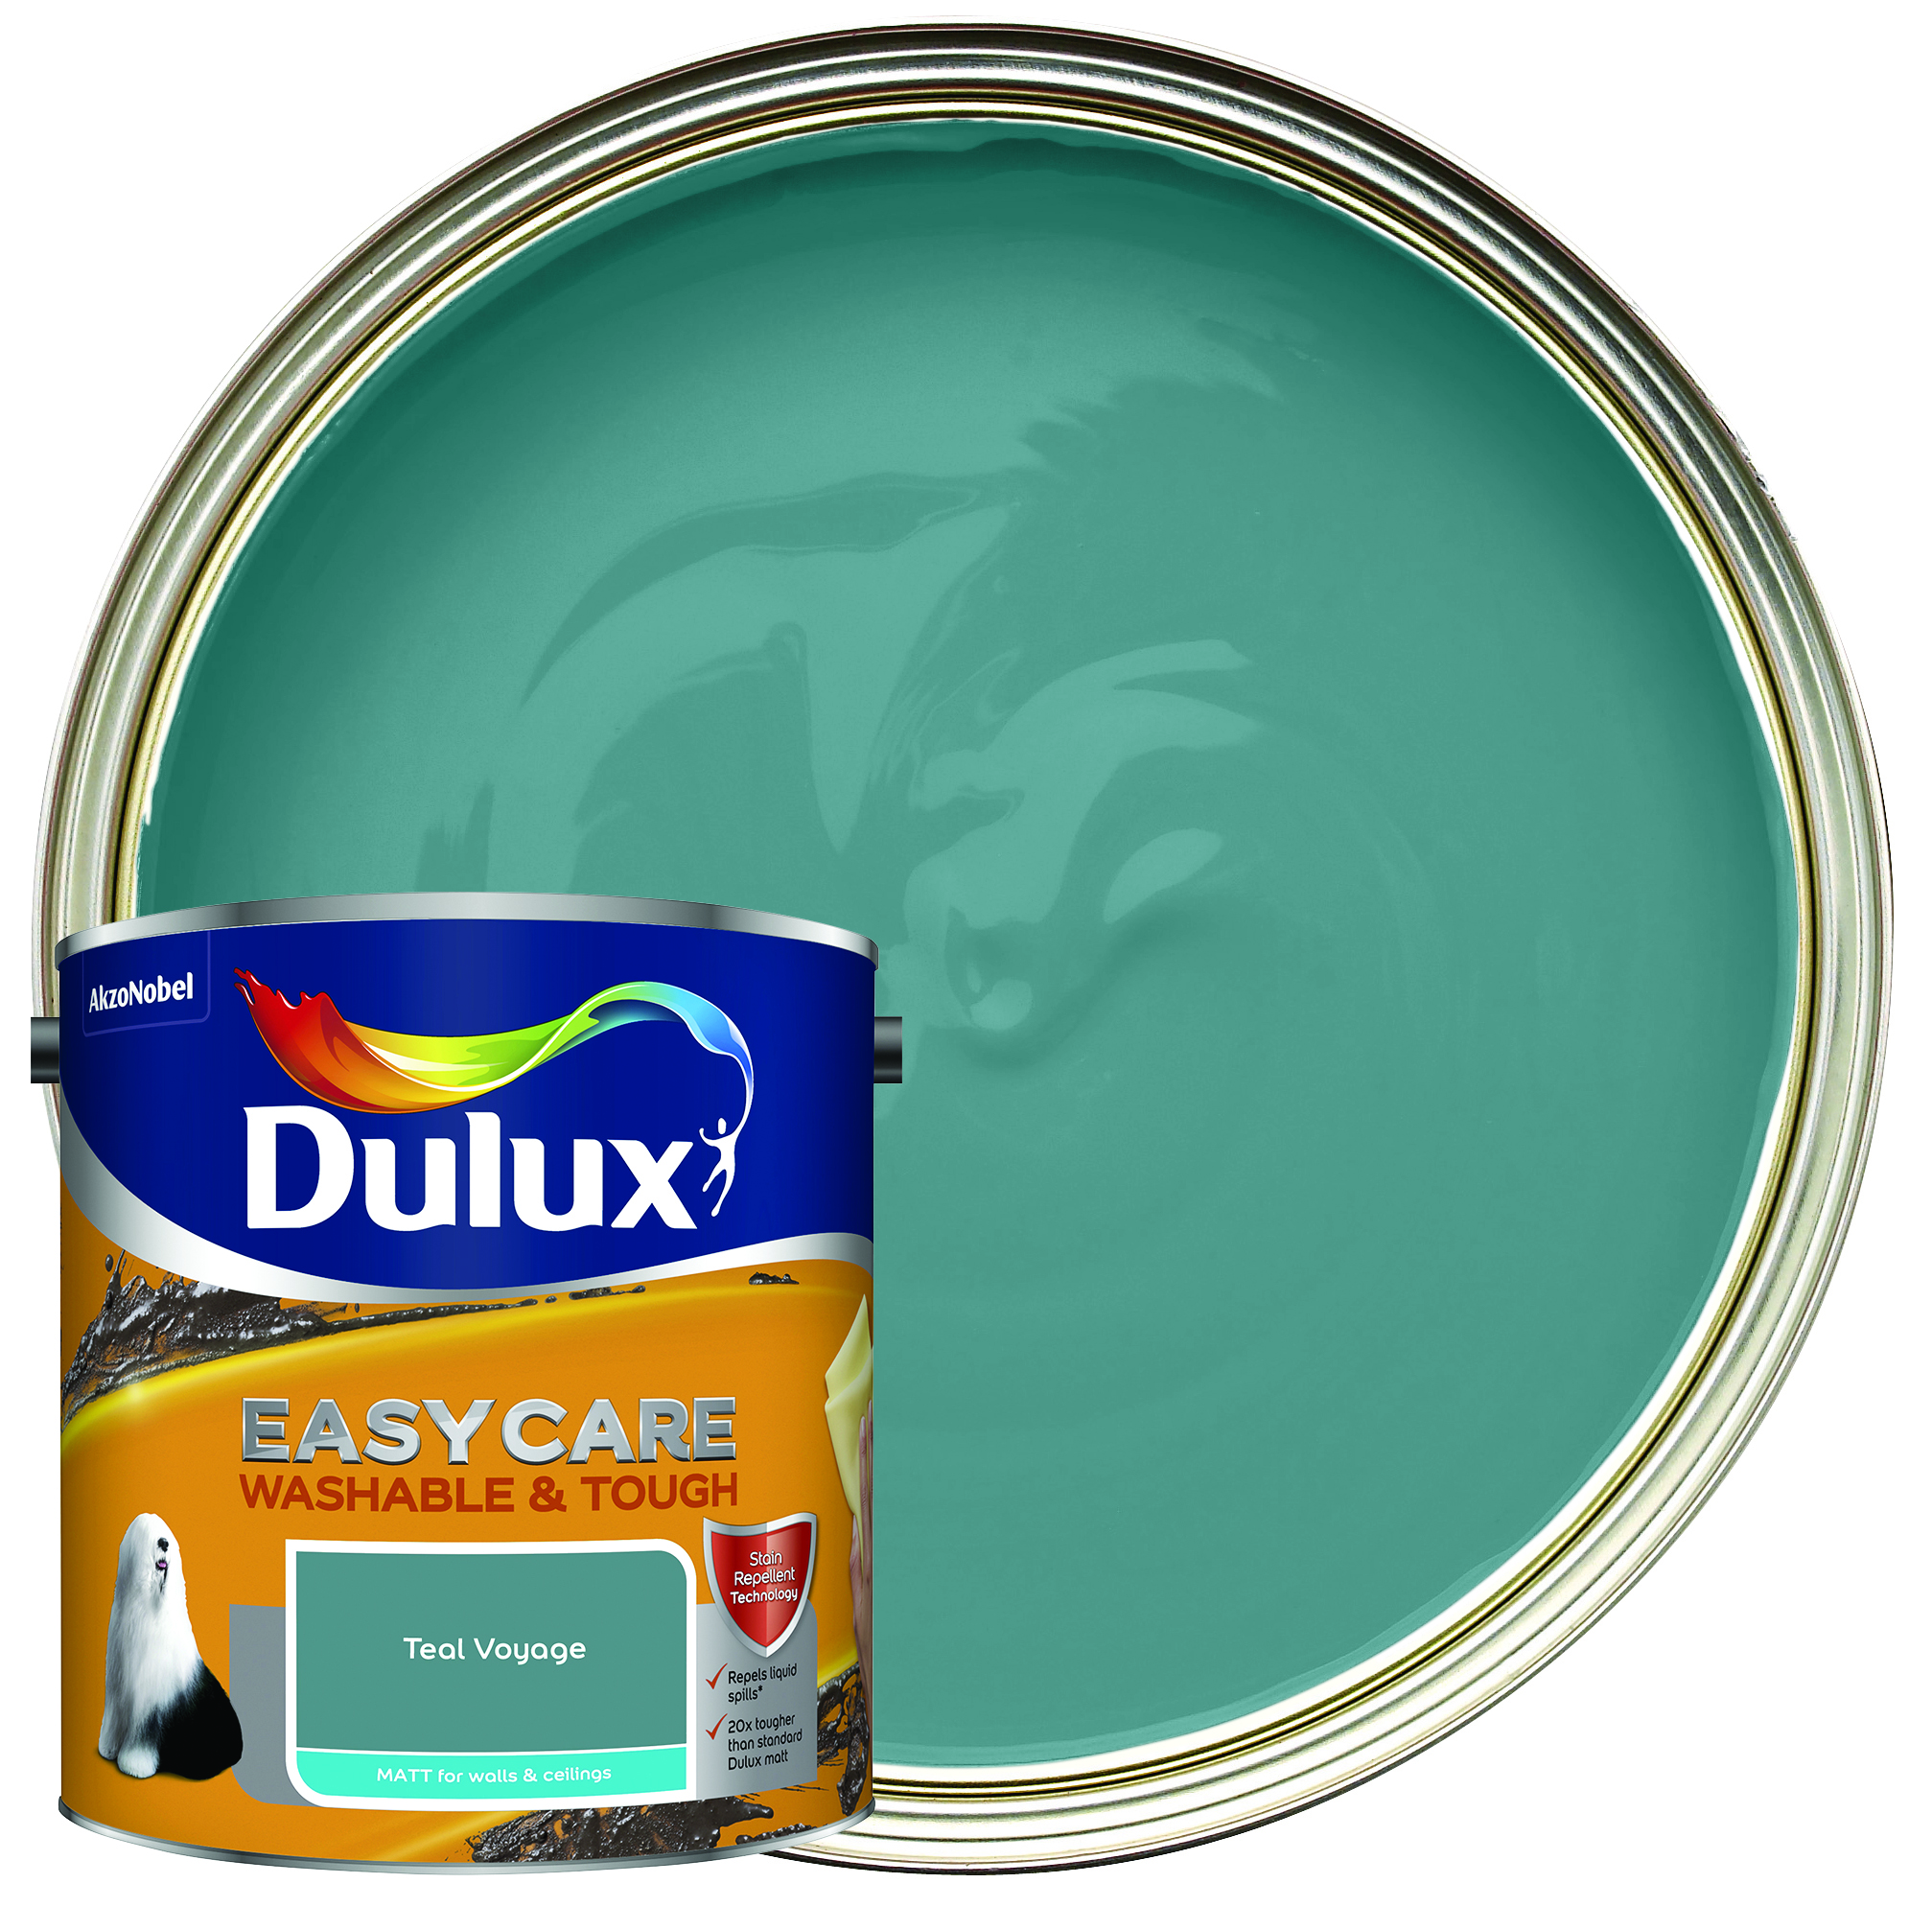 Dulux Easycare Washable & Tough Matt Emulsion Paint - Teal Voyage - 2.5L